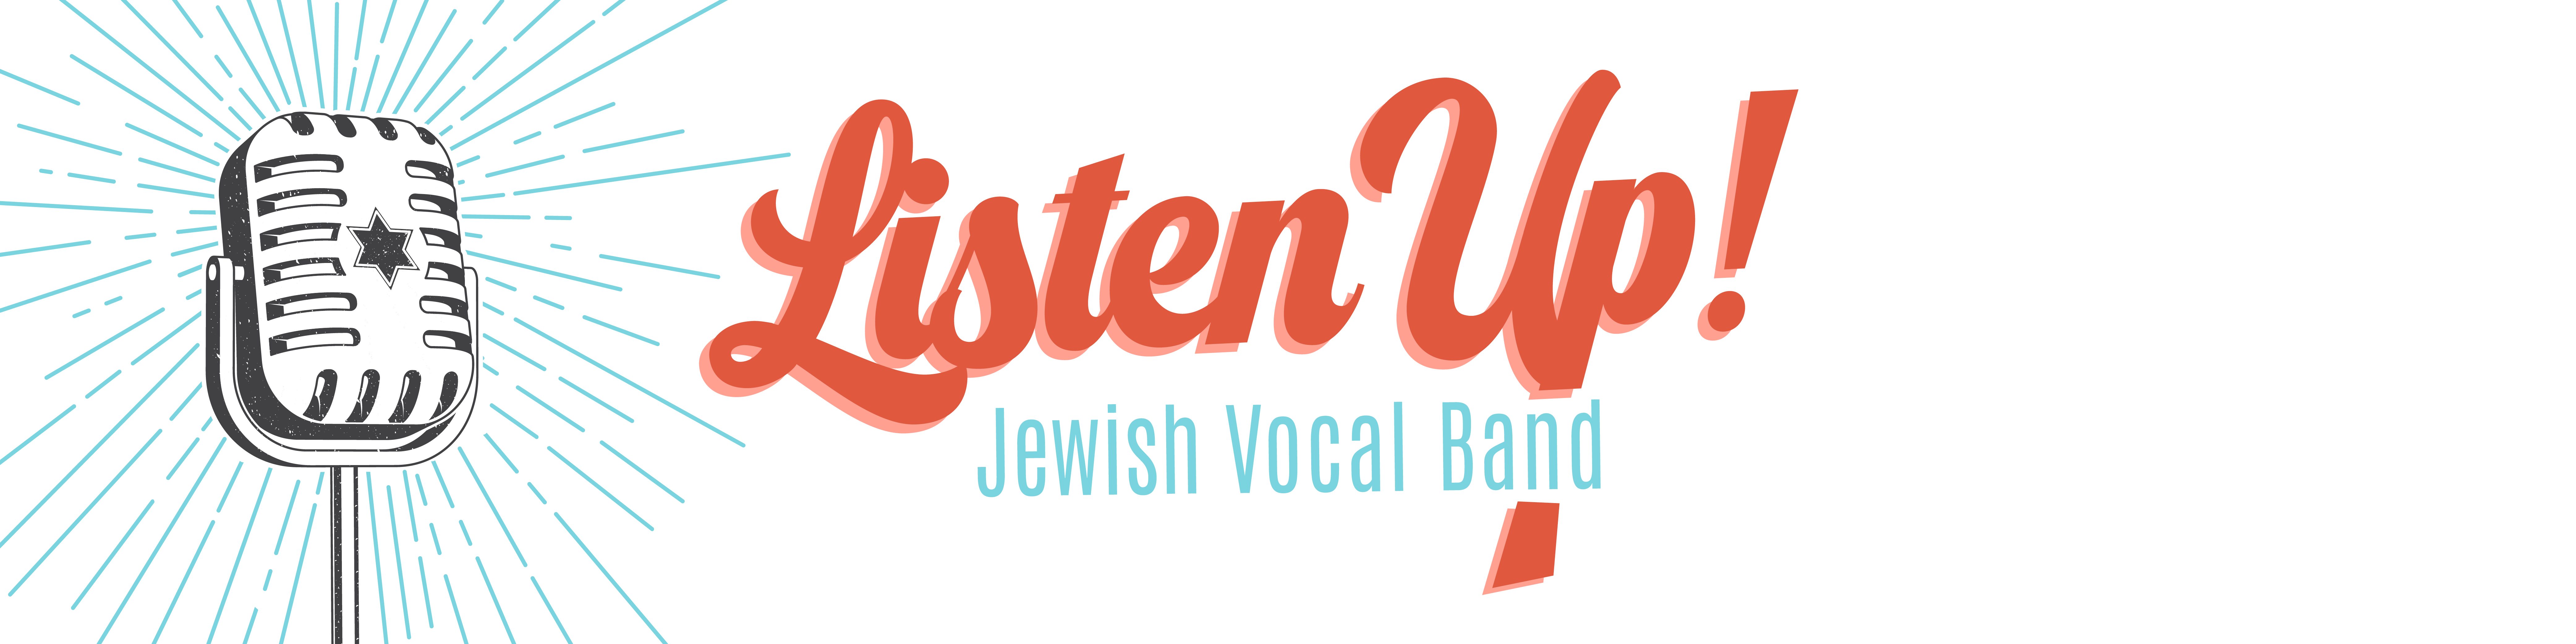 Listen Up! Jewish Vocal Band